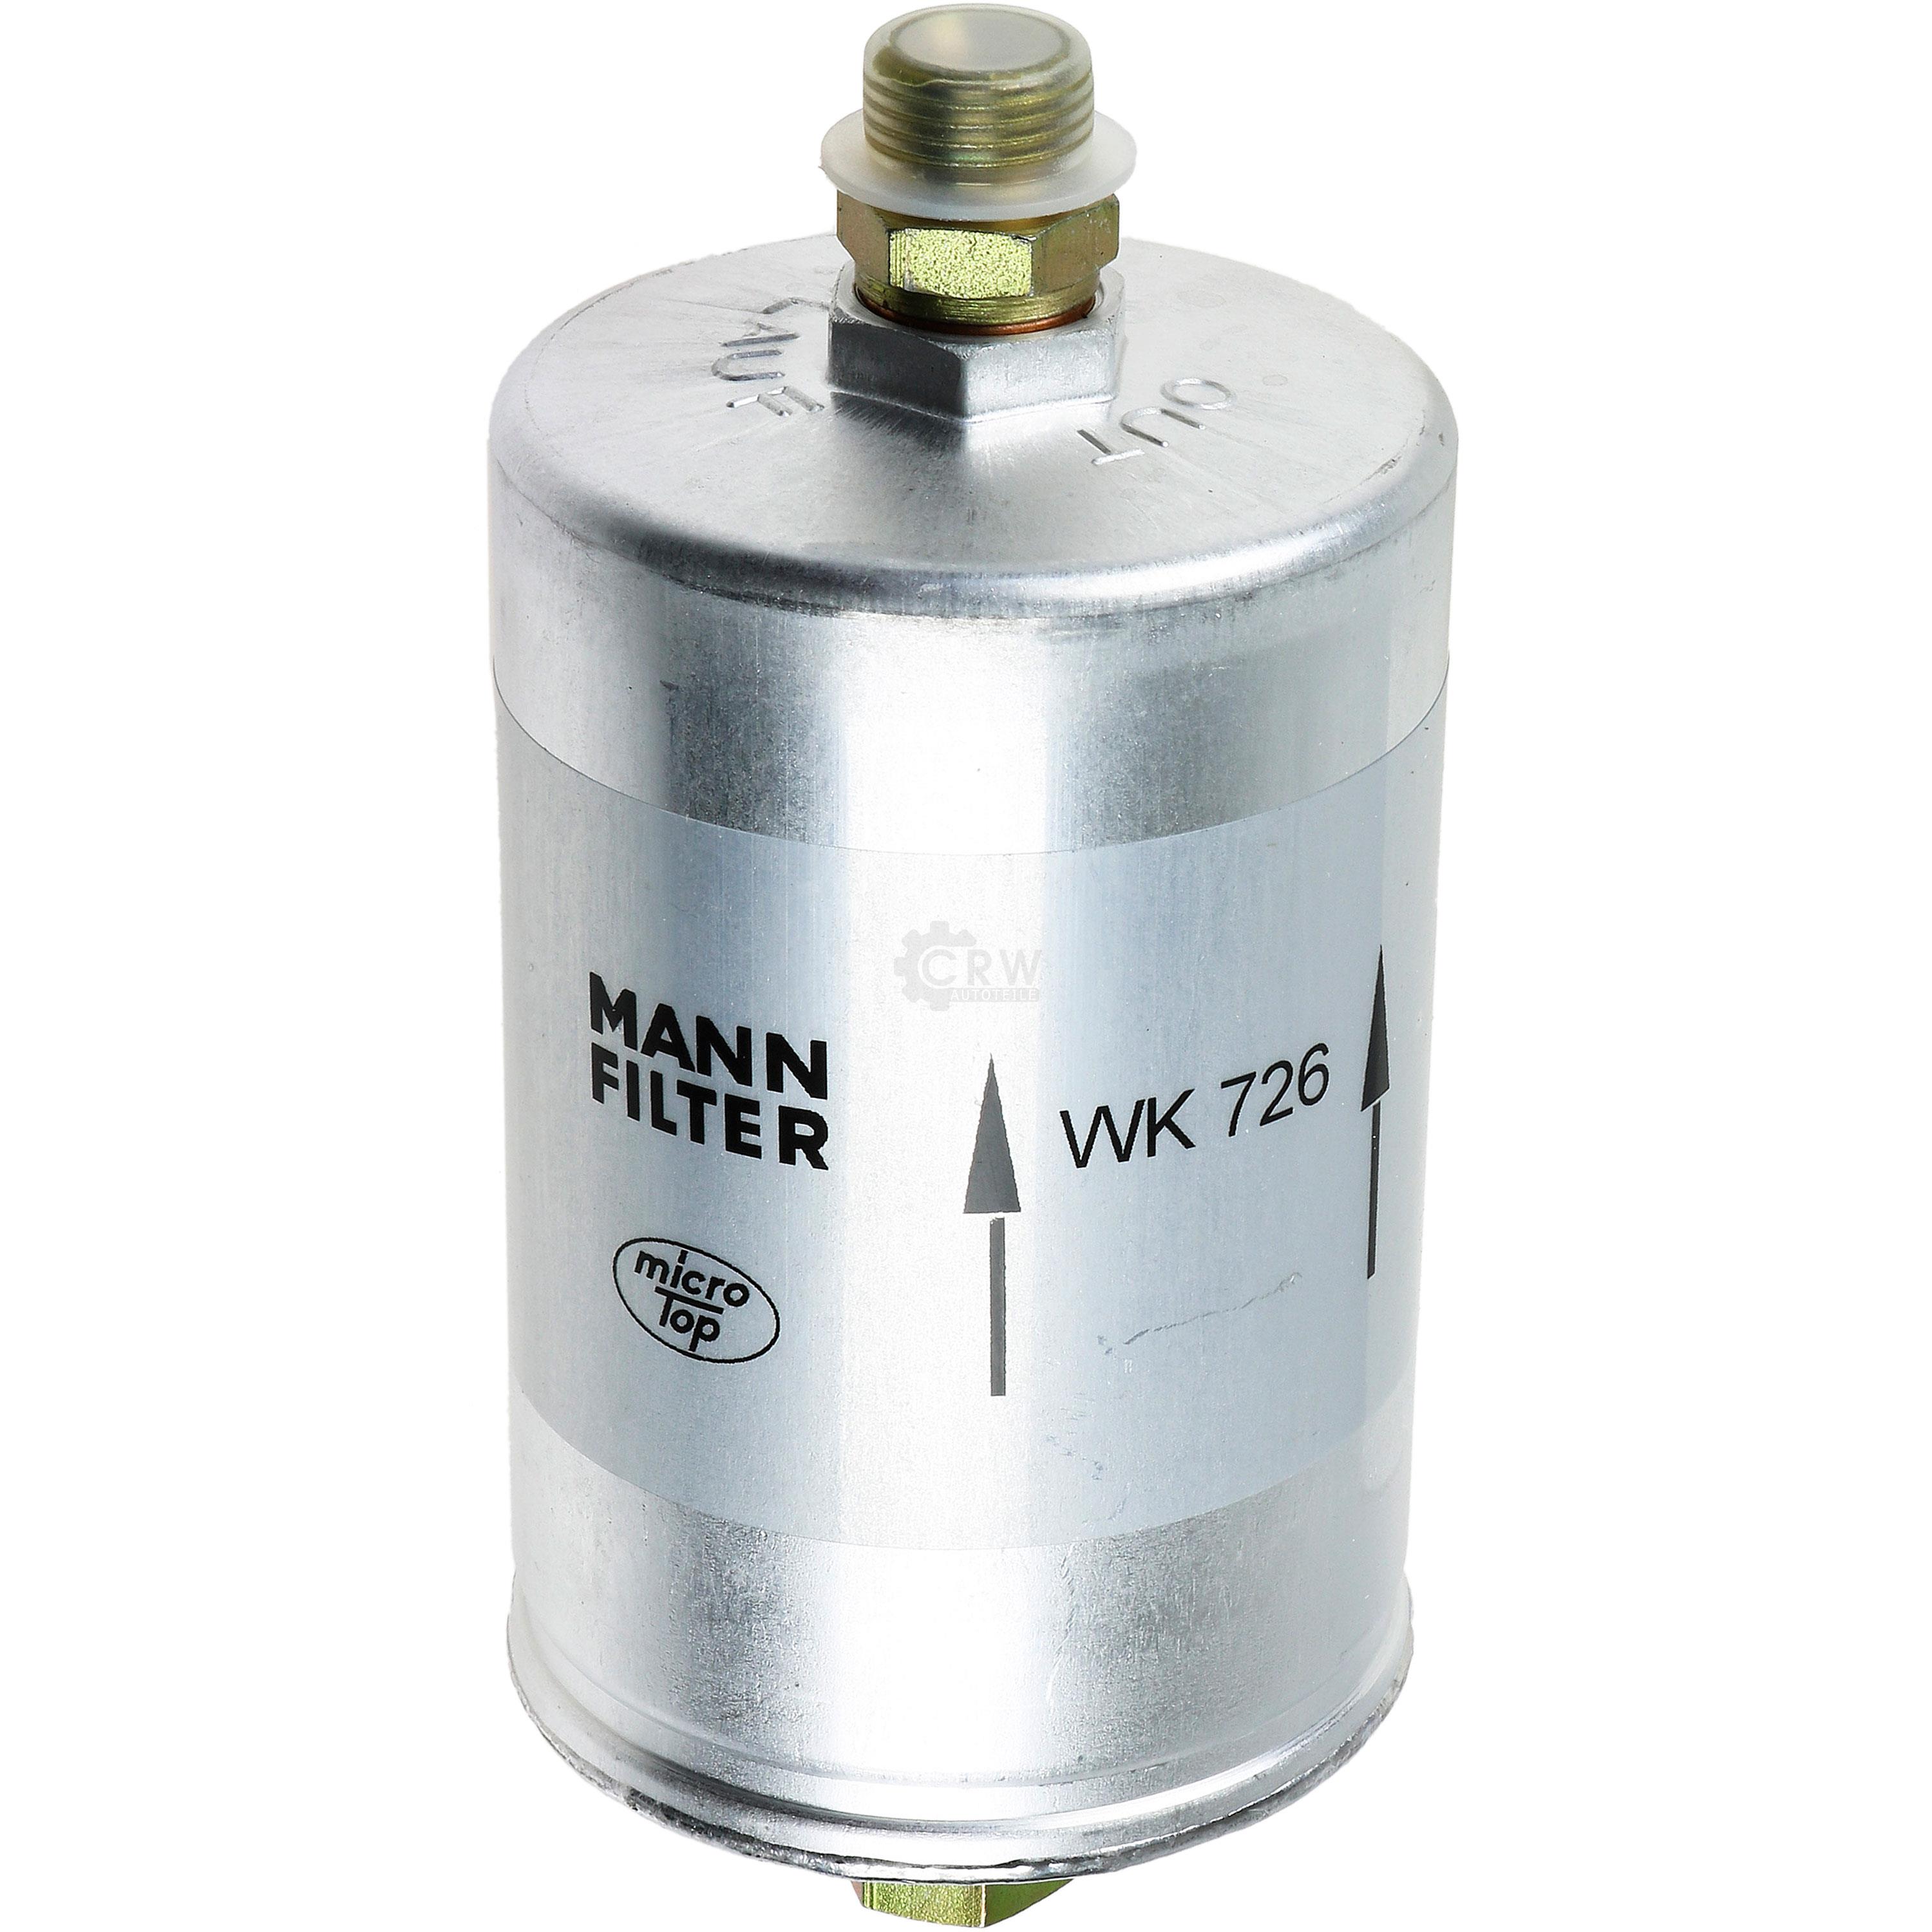 MANN-FILTER Kraftstofffilter WK 726 Fuel Filter